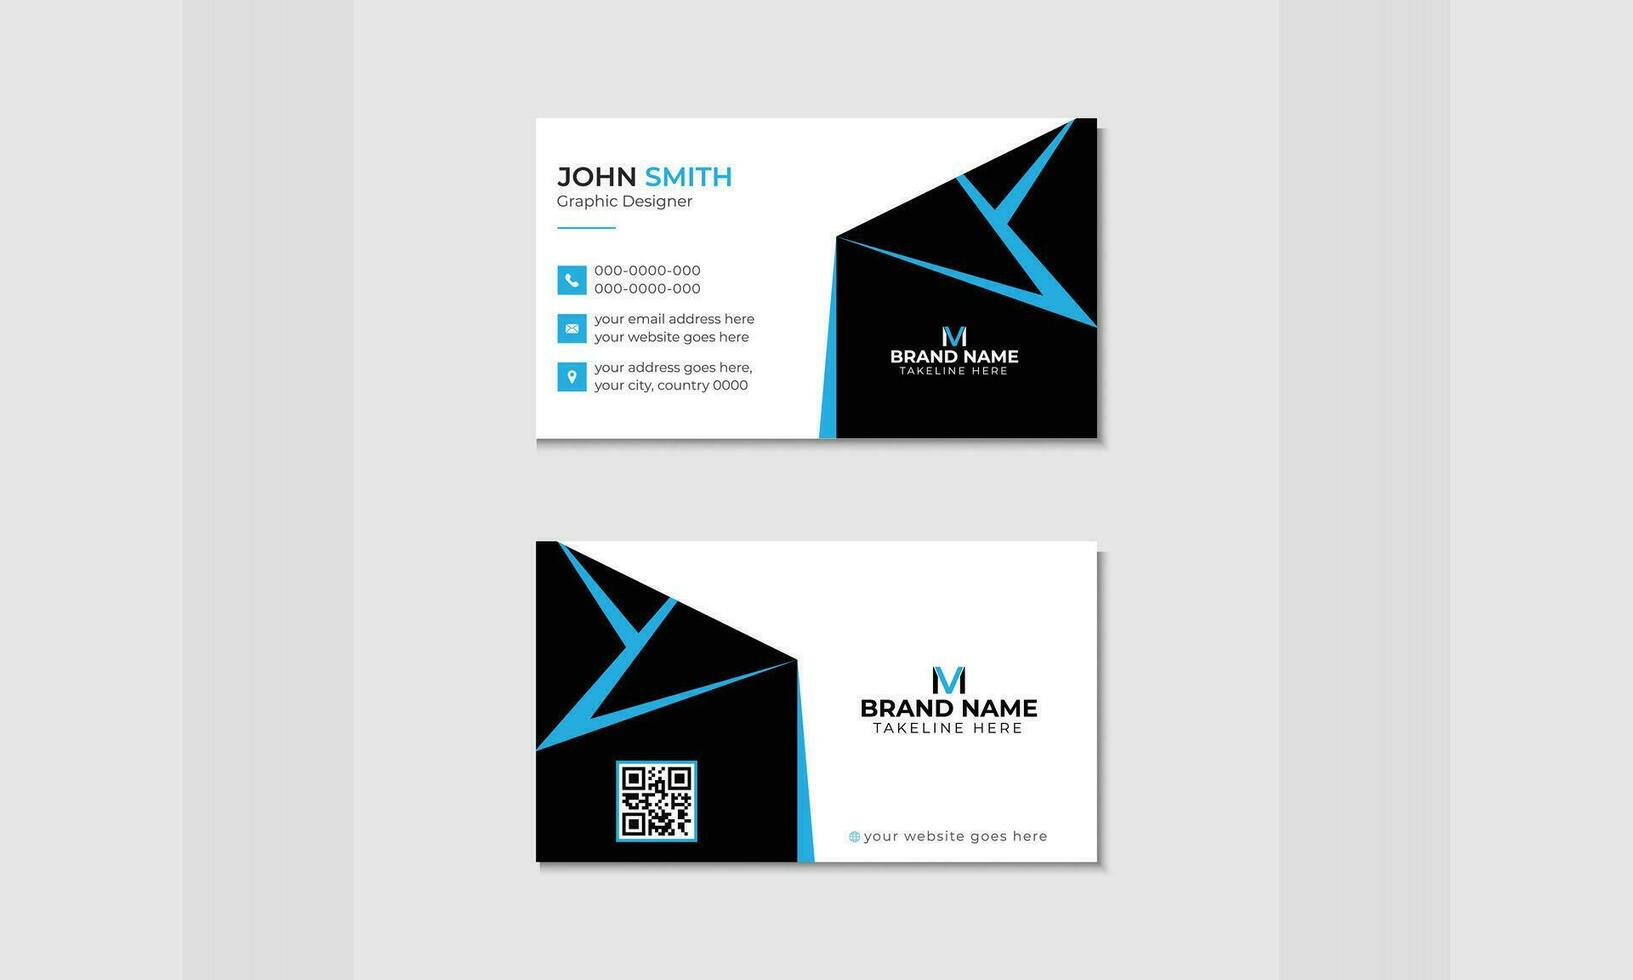 Projeto para uma moderno, simples o negócio cartão com a da organização logotipo do visitante cartão modelo dentro vetor formato para ambos profissional e pessoal usar.